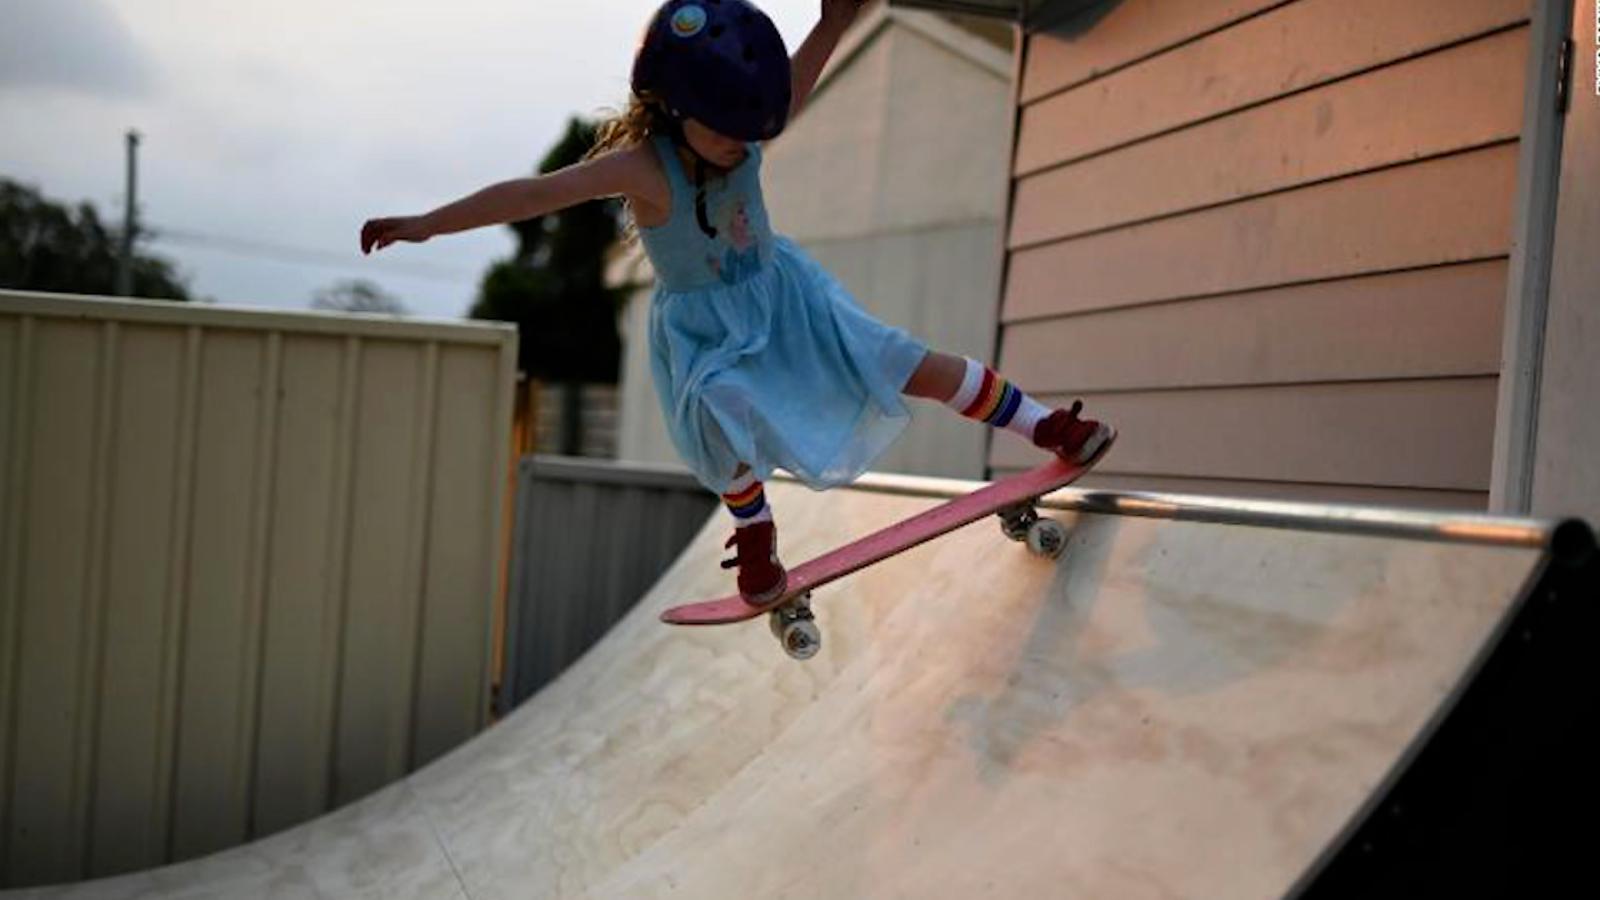 lavabo Injerto Eliminación Esta niña de seis años ya es una estrella de la patineta | Video | CNN